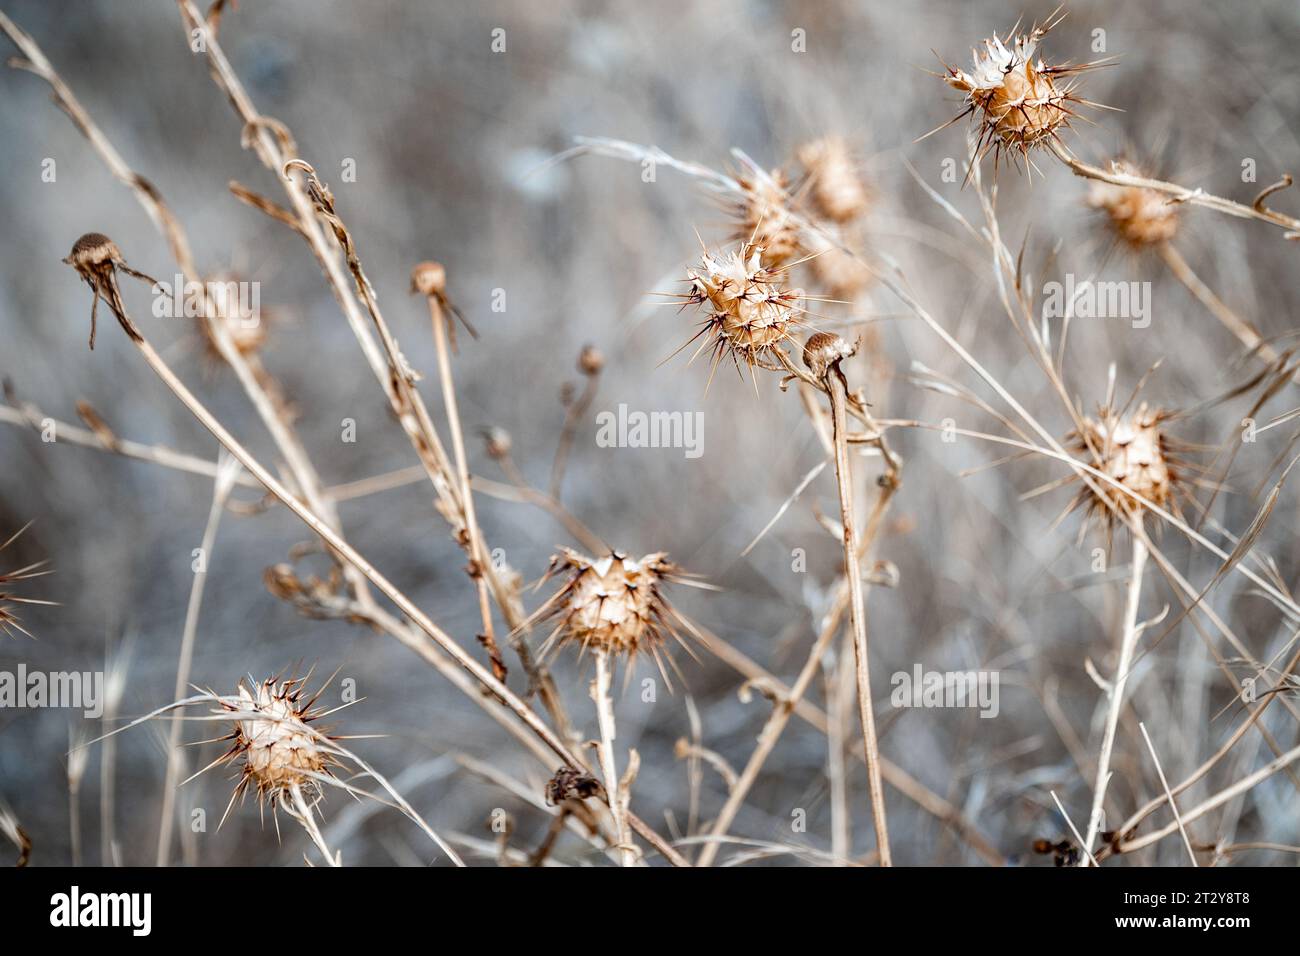 un'immagine da sfondo di una scena naturale invernale di semi spinosi e piante secche Foto Stock